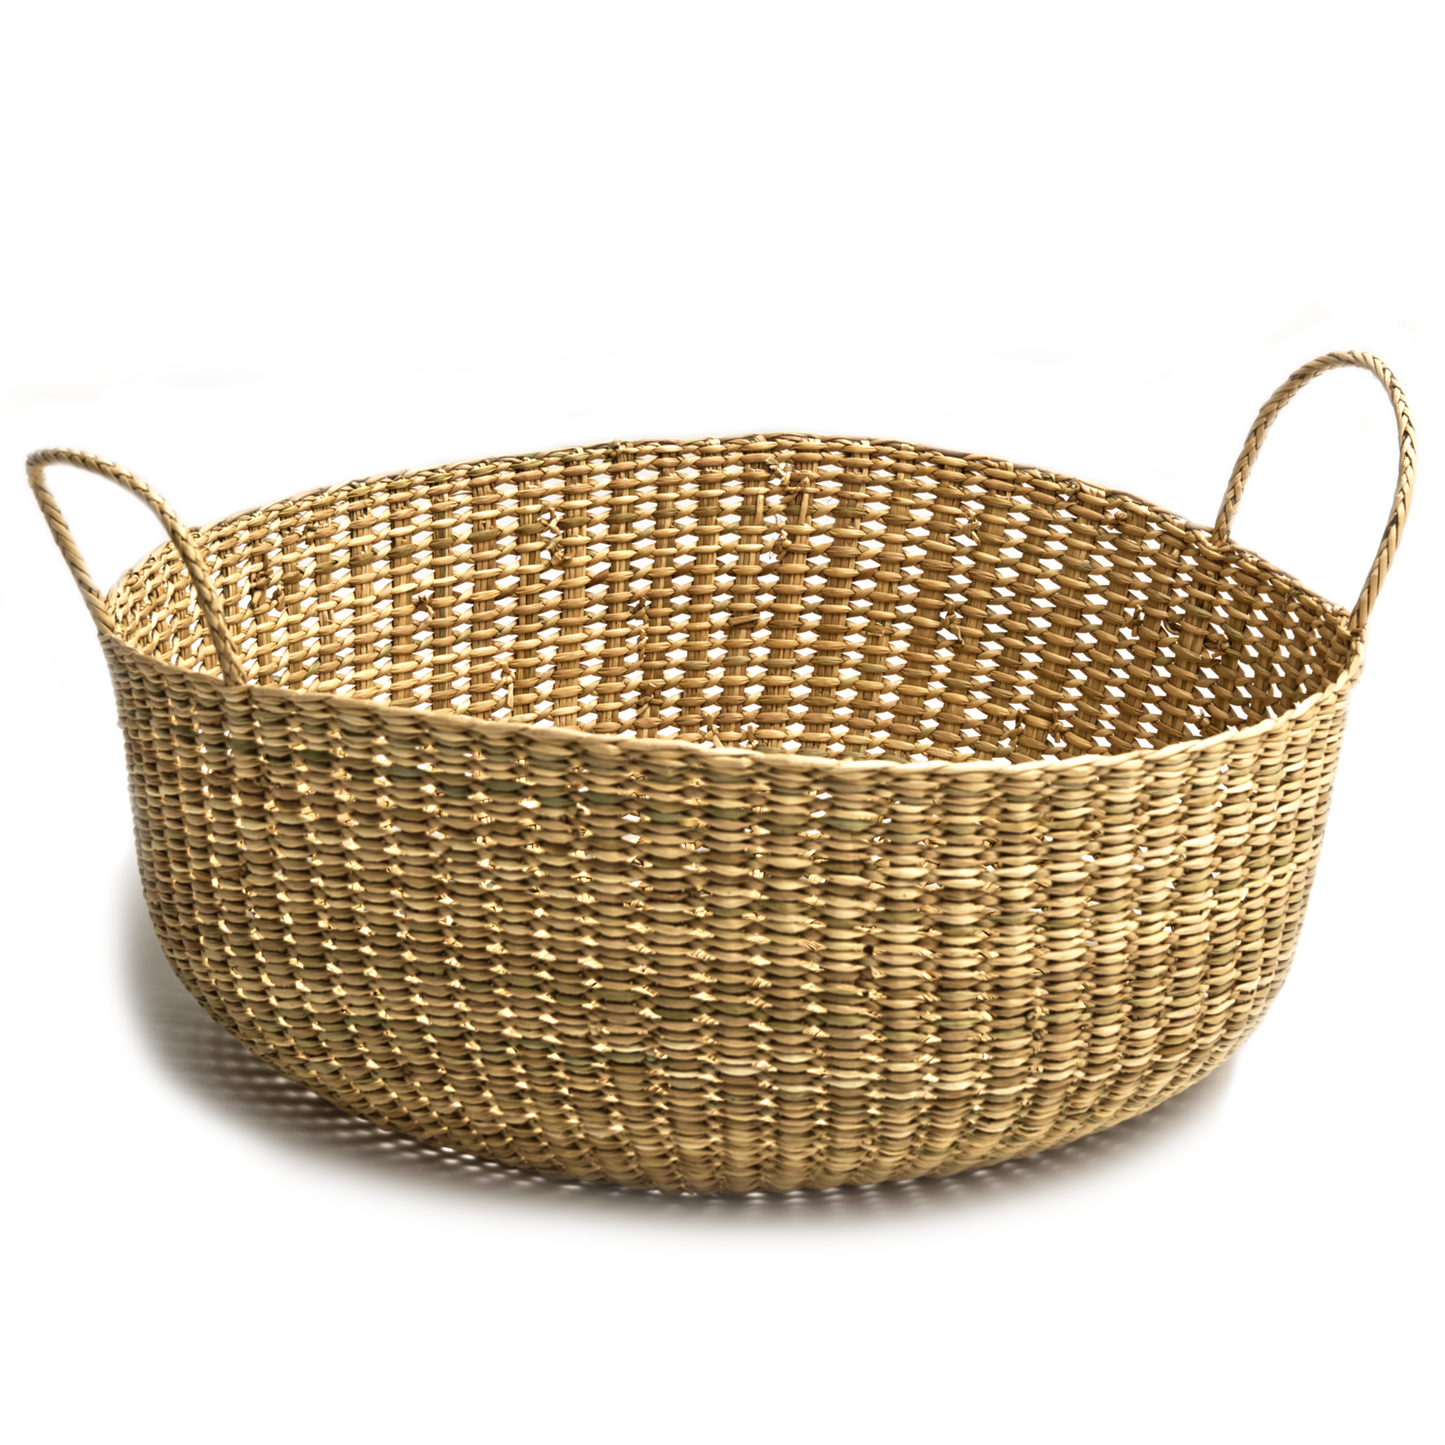 Intiearth handwoven giving floor basket in nudo weave